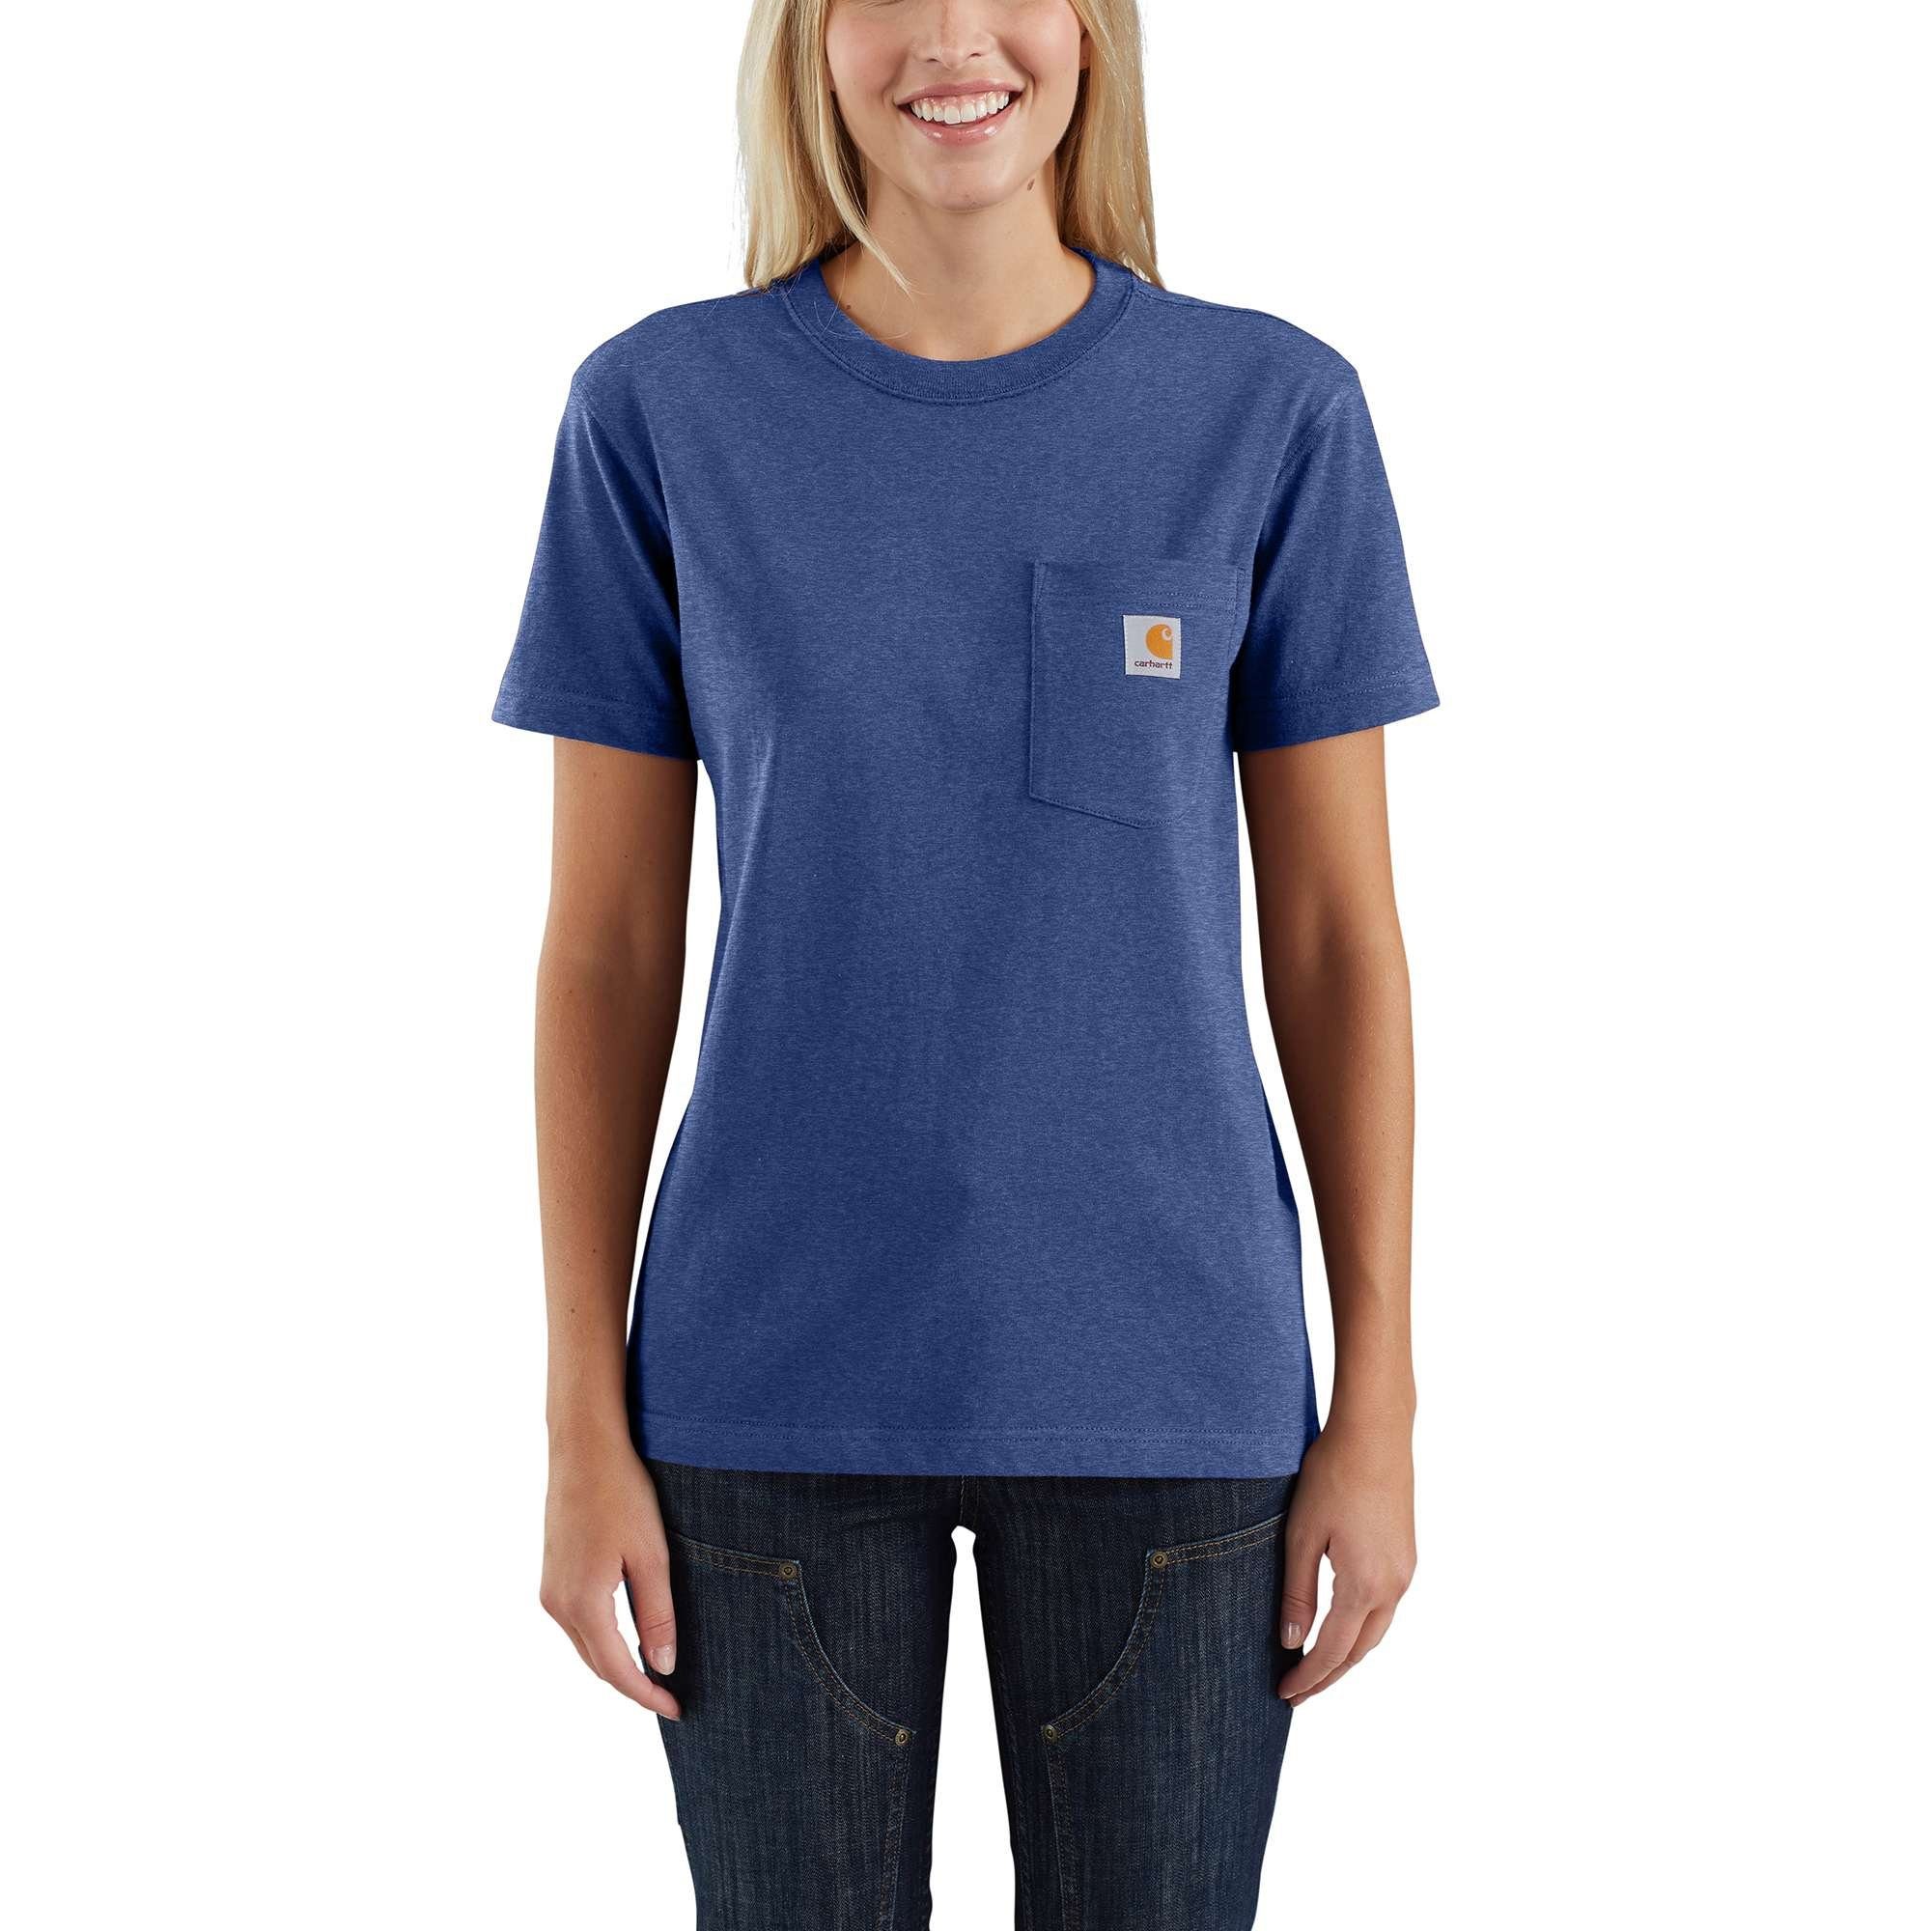 Carhartt T-Shirt blue Loose Pocket T-Shirt heather scout Heavyweight Adult Fit Short-Sleeve Carhartt Damen